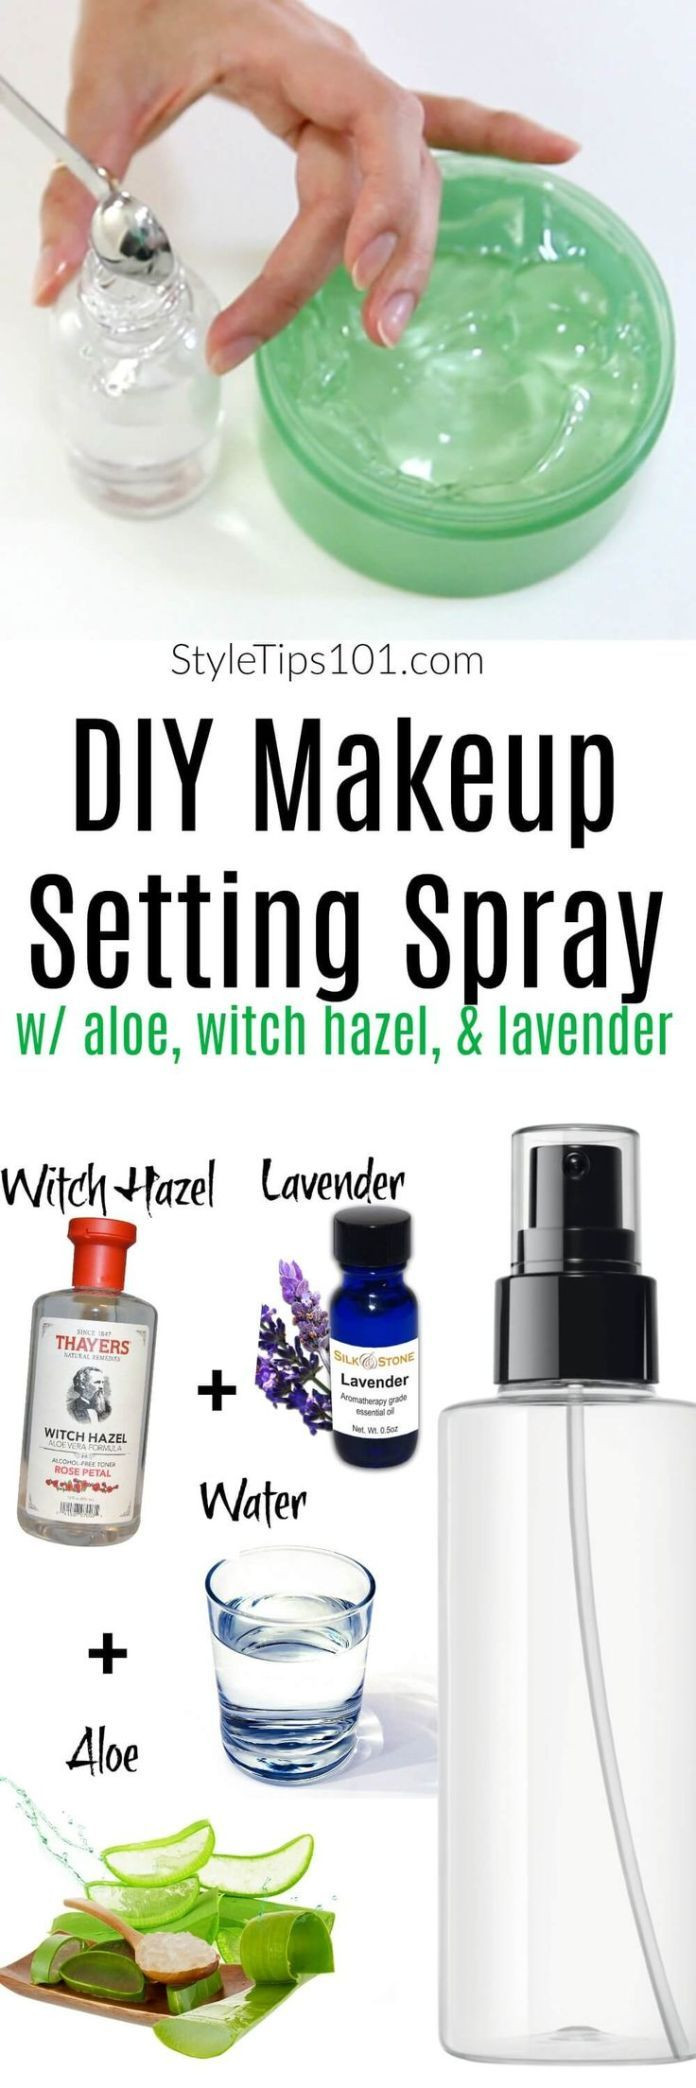 Best ideas about DIY Makeup Setting Spray
. Save or Pin Idée pour DIY Masque Natural & DIY Skin Care DIY Now.